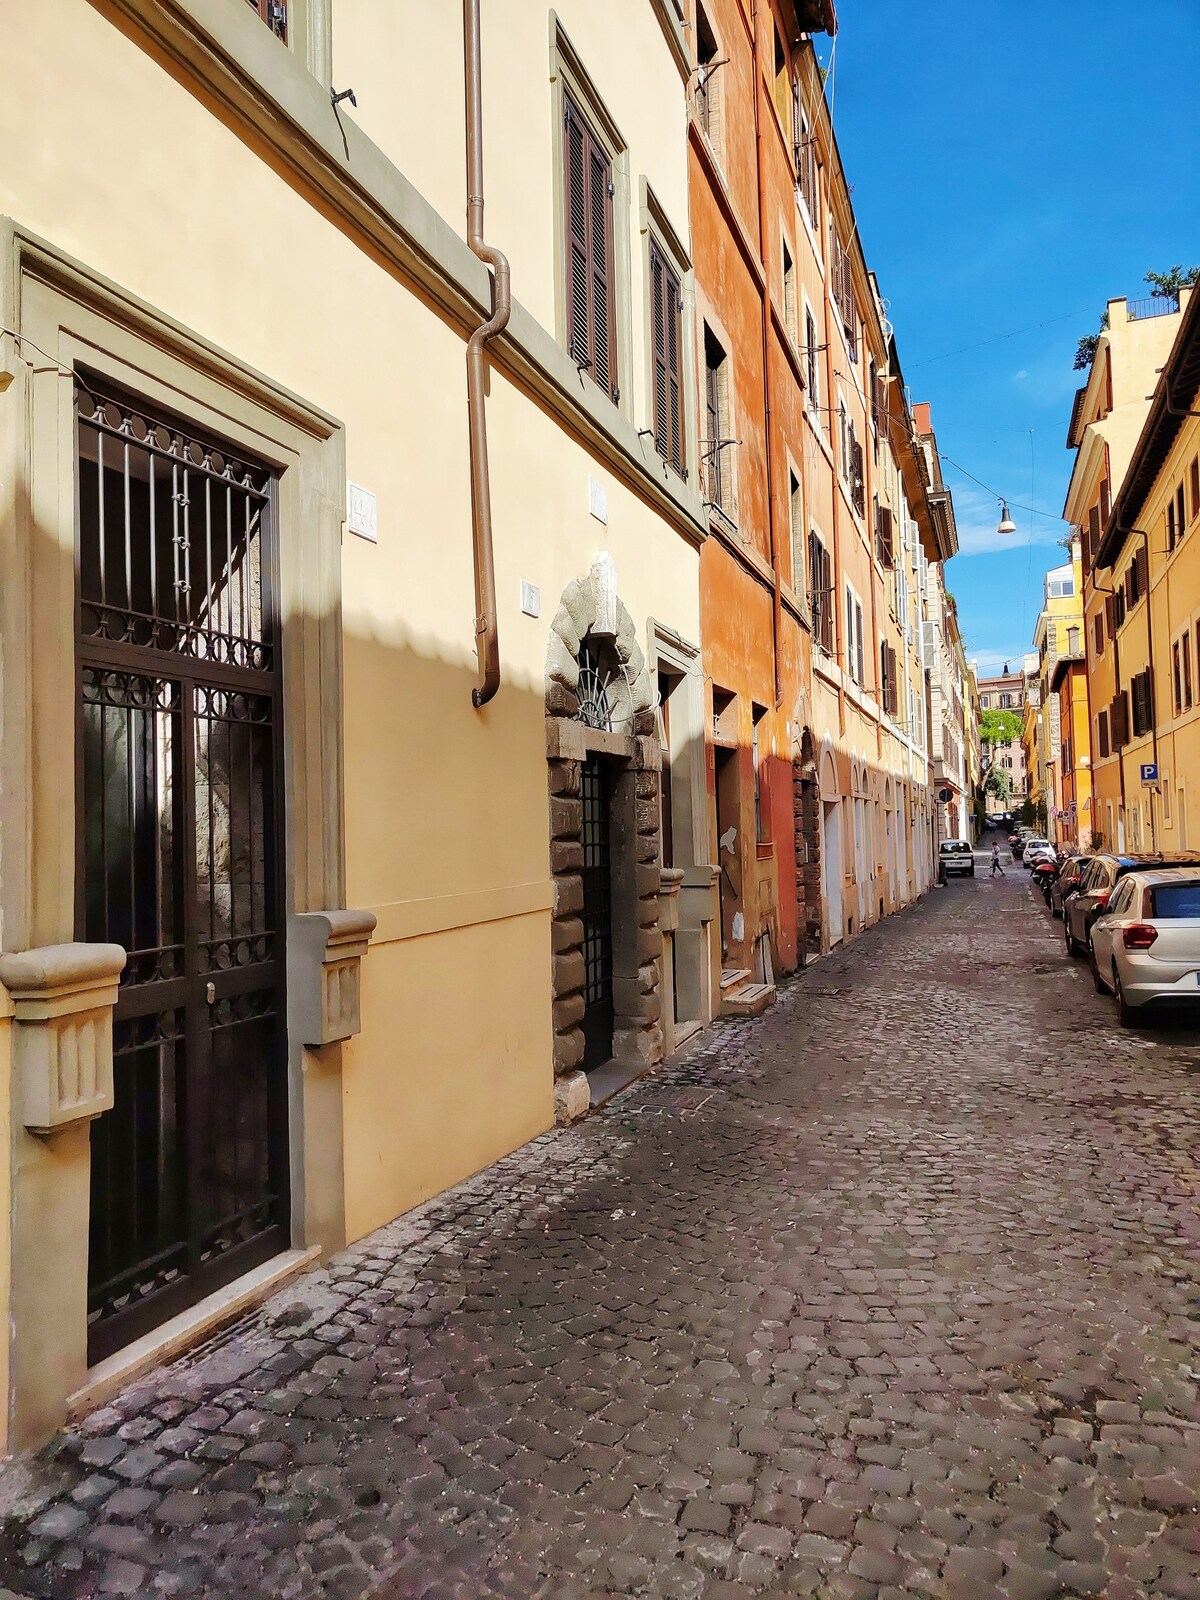 Palline Apartment - A due passi da San Pietro